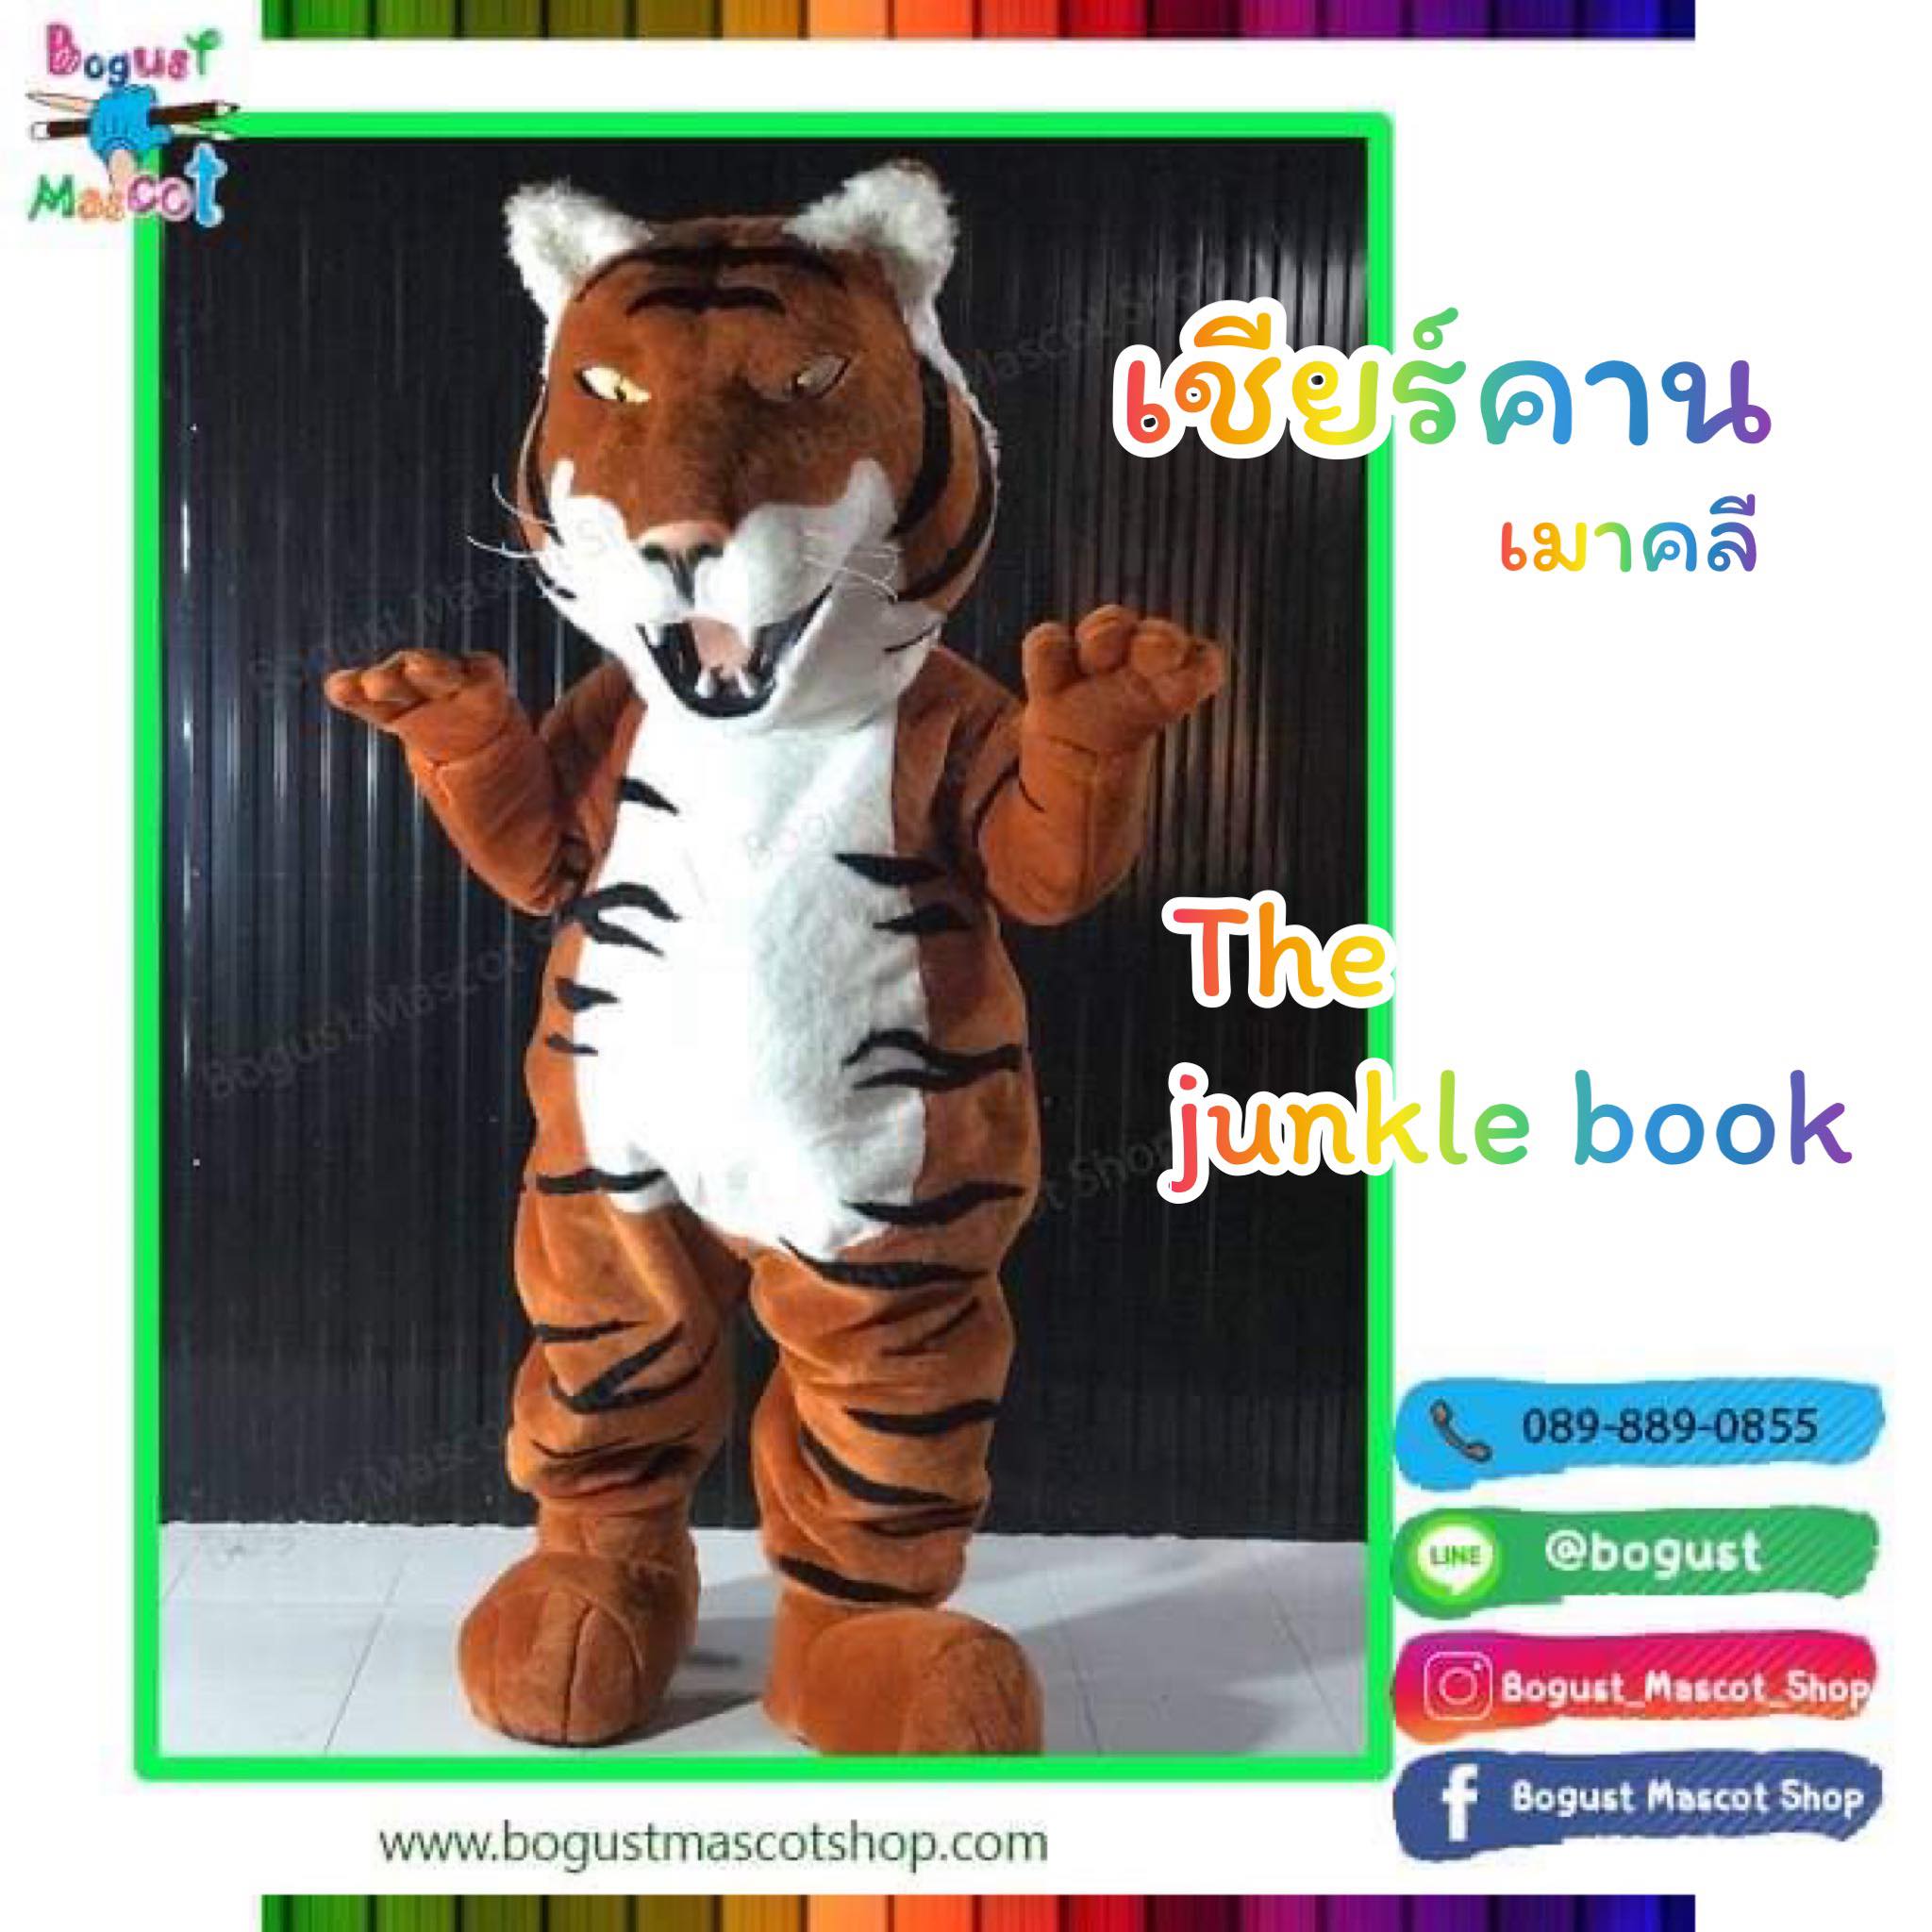 มาสคอต (Mascot) ---> เสือโคร่ง เชียร์คาน เมาคลี The Junkle book